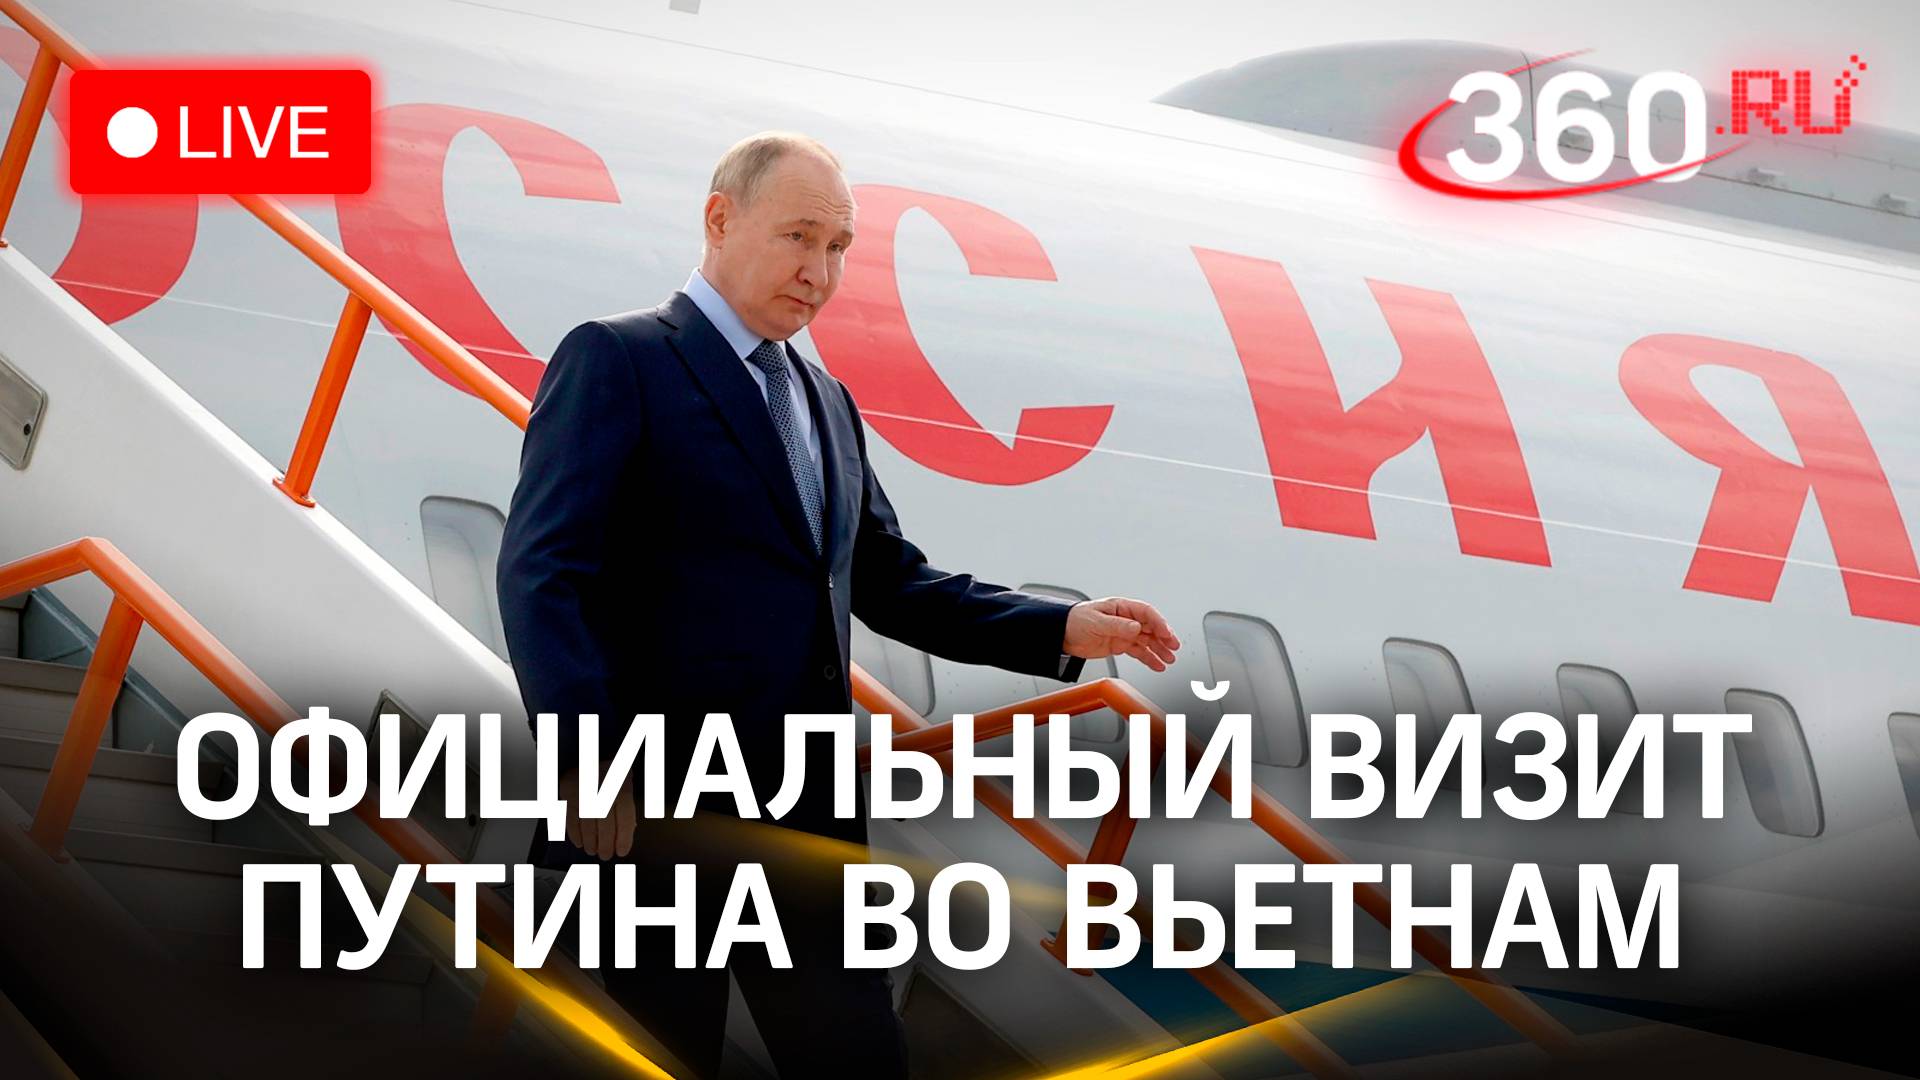 Официальный визит Путина во Вьетнам. Прямая трансляция